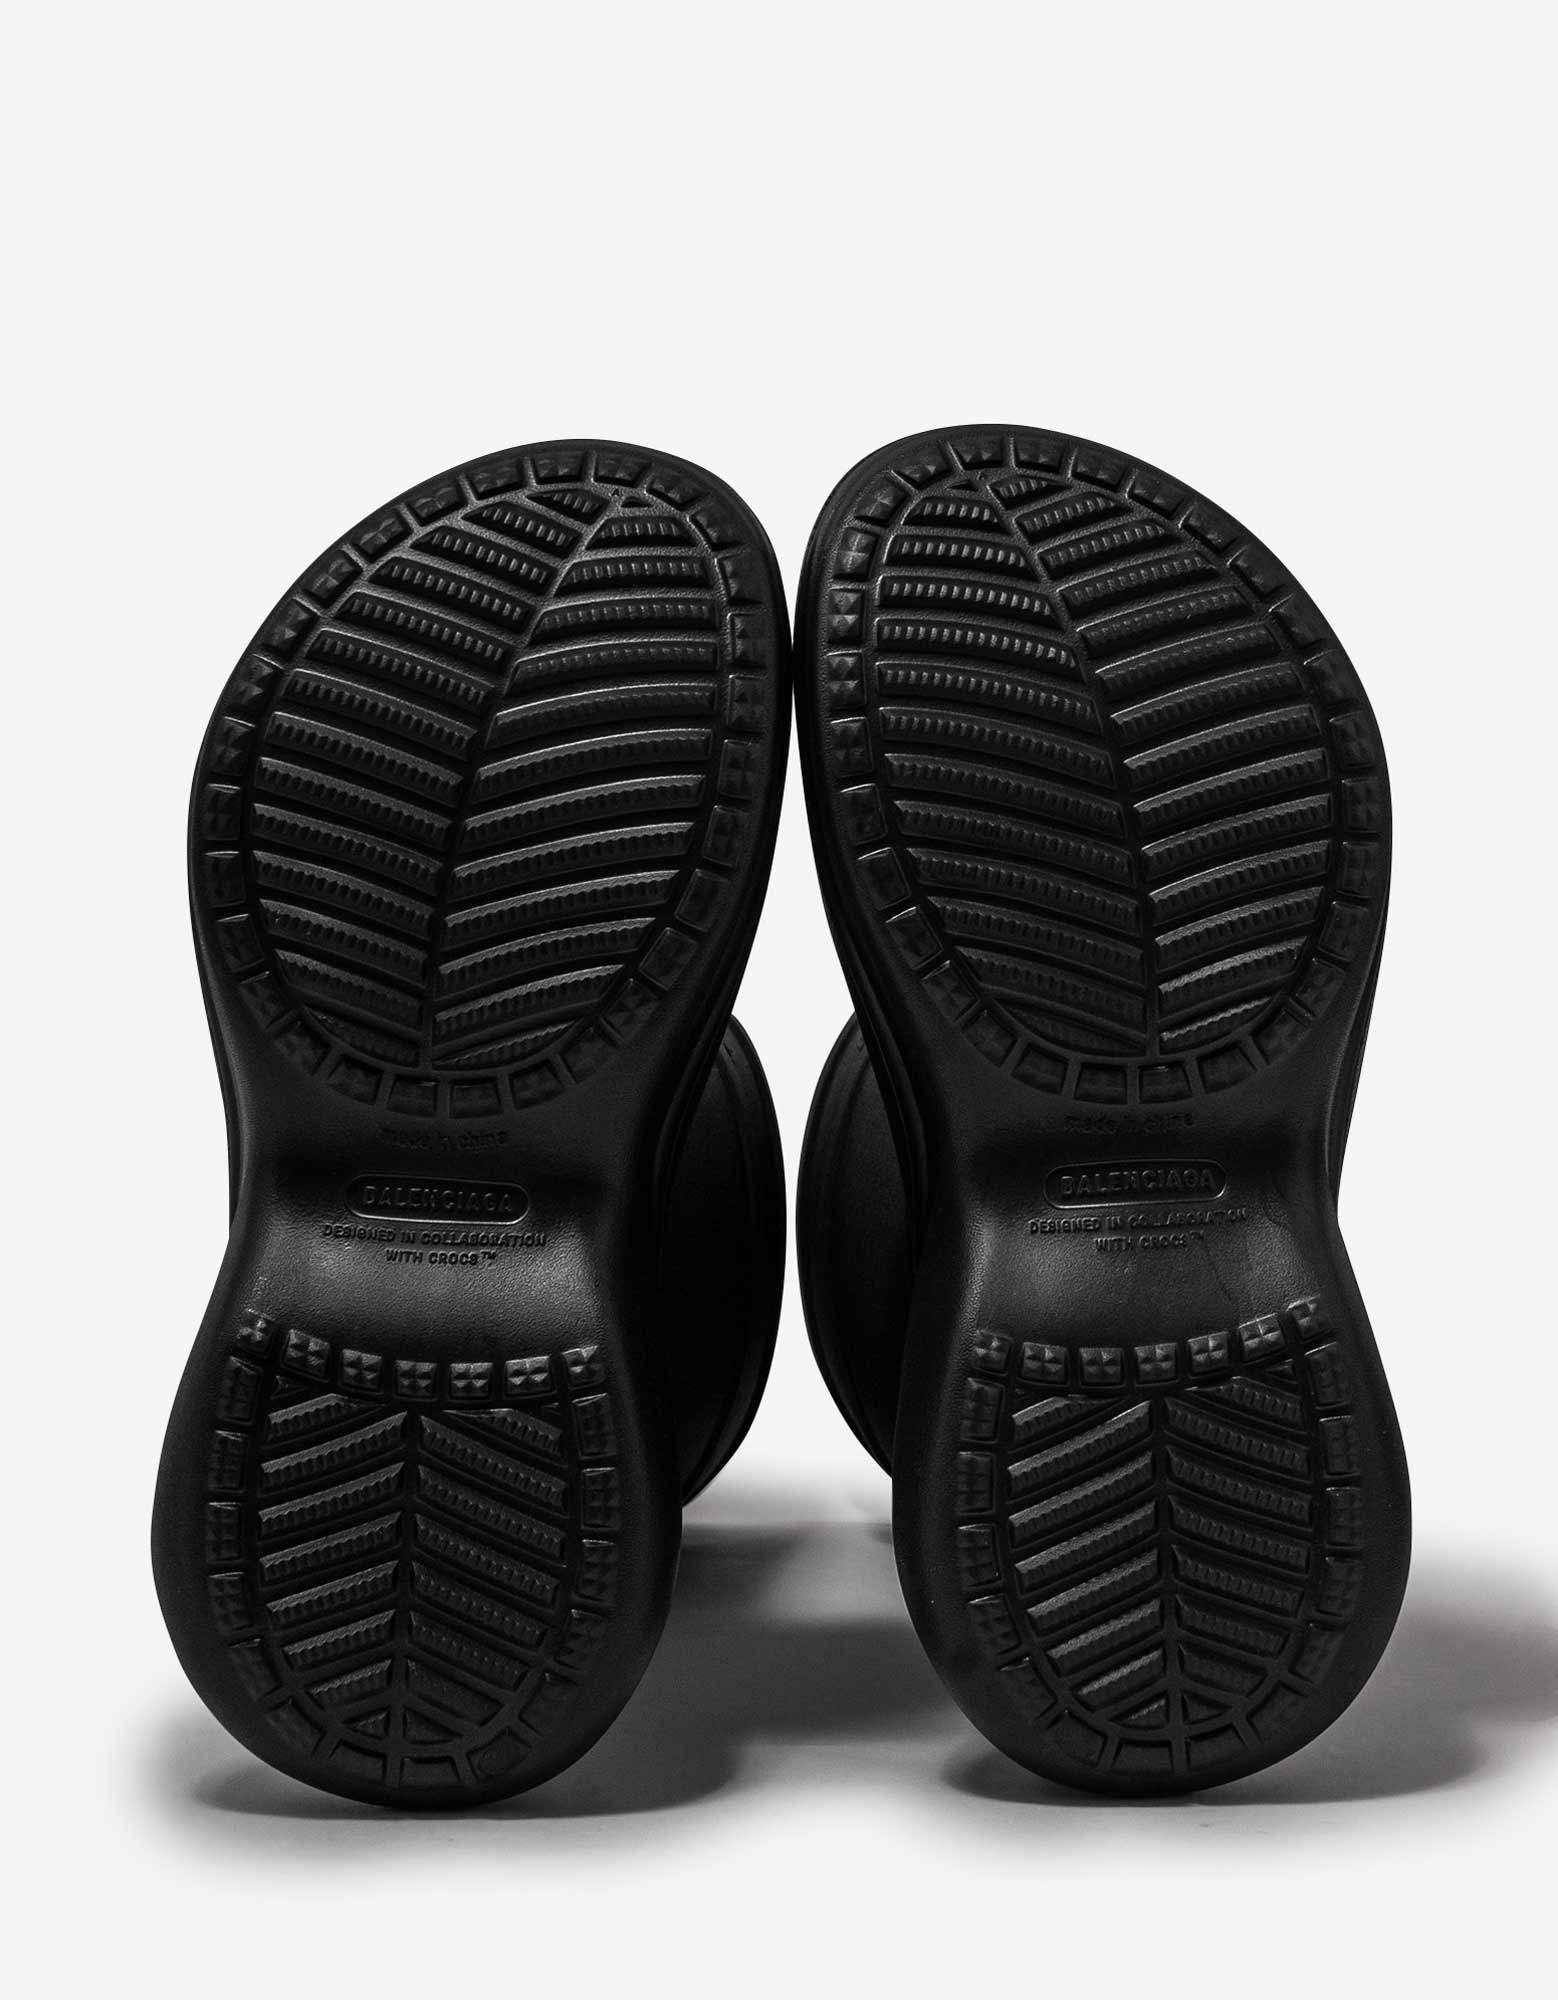 Black Crocs Boots - 5